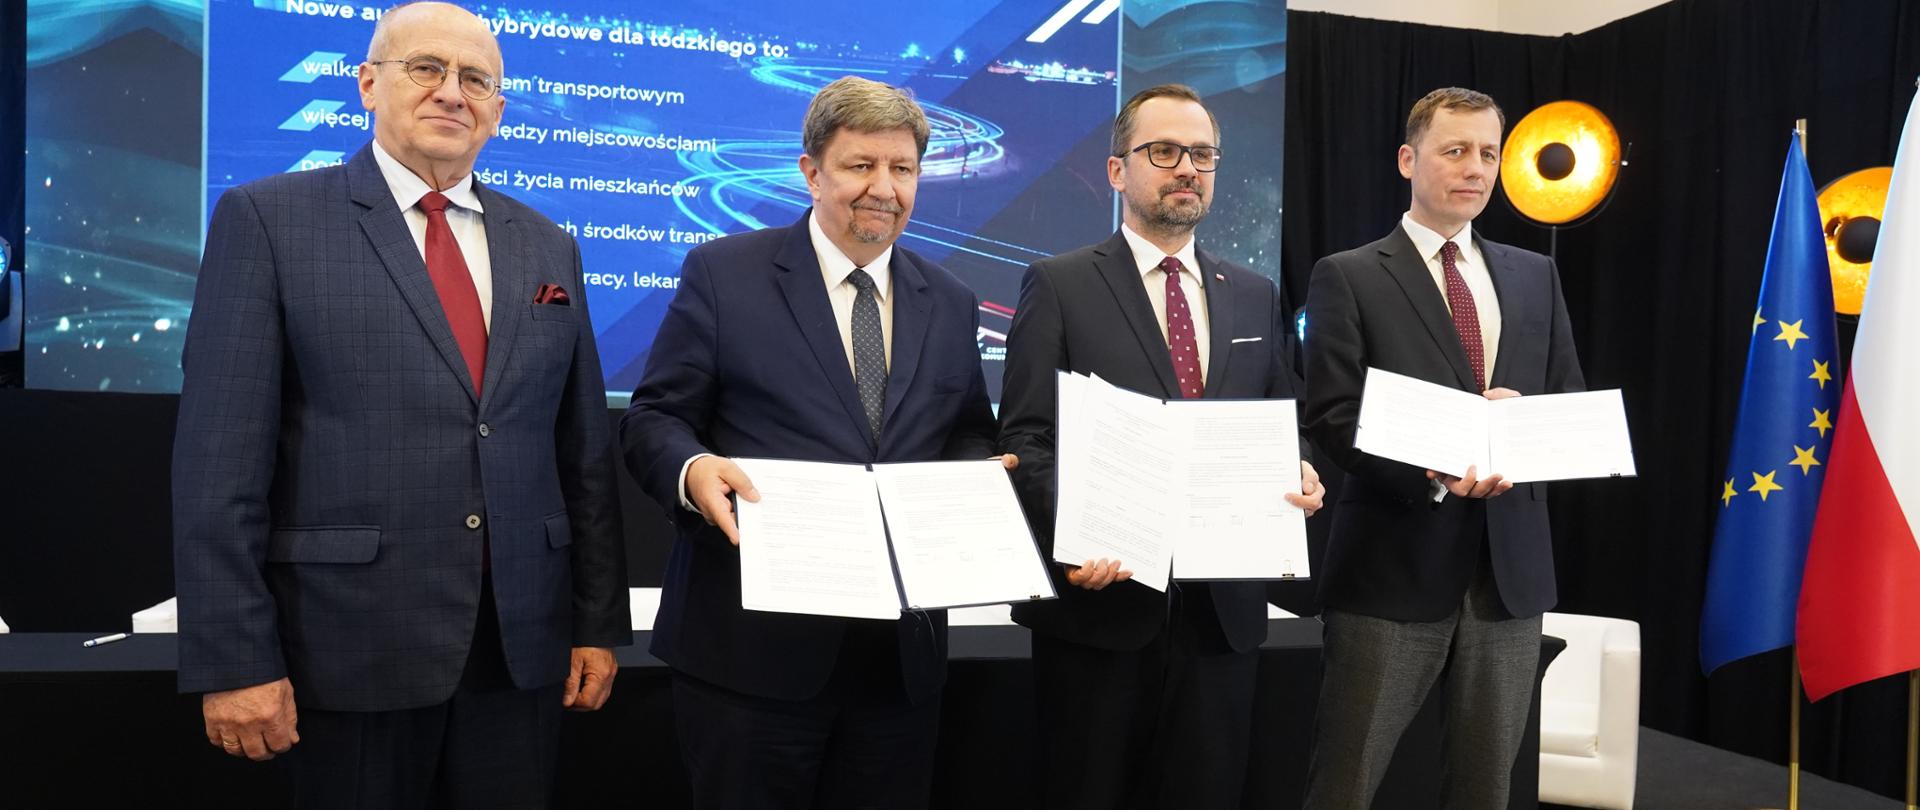 Cztery osoby stoją obok siebie. Drugi od prawej stoi wiceminister Marcin Horała. Trzech mężczyzn trzyma dokumenty w obu dłoniach. 